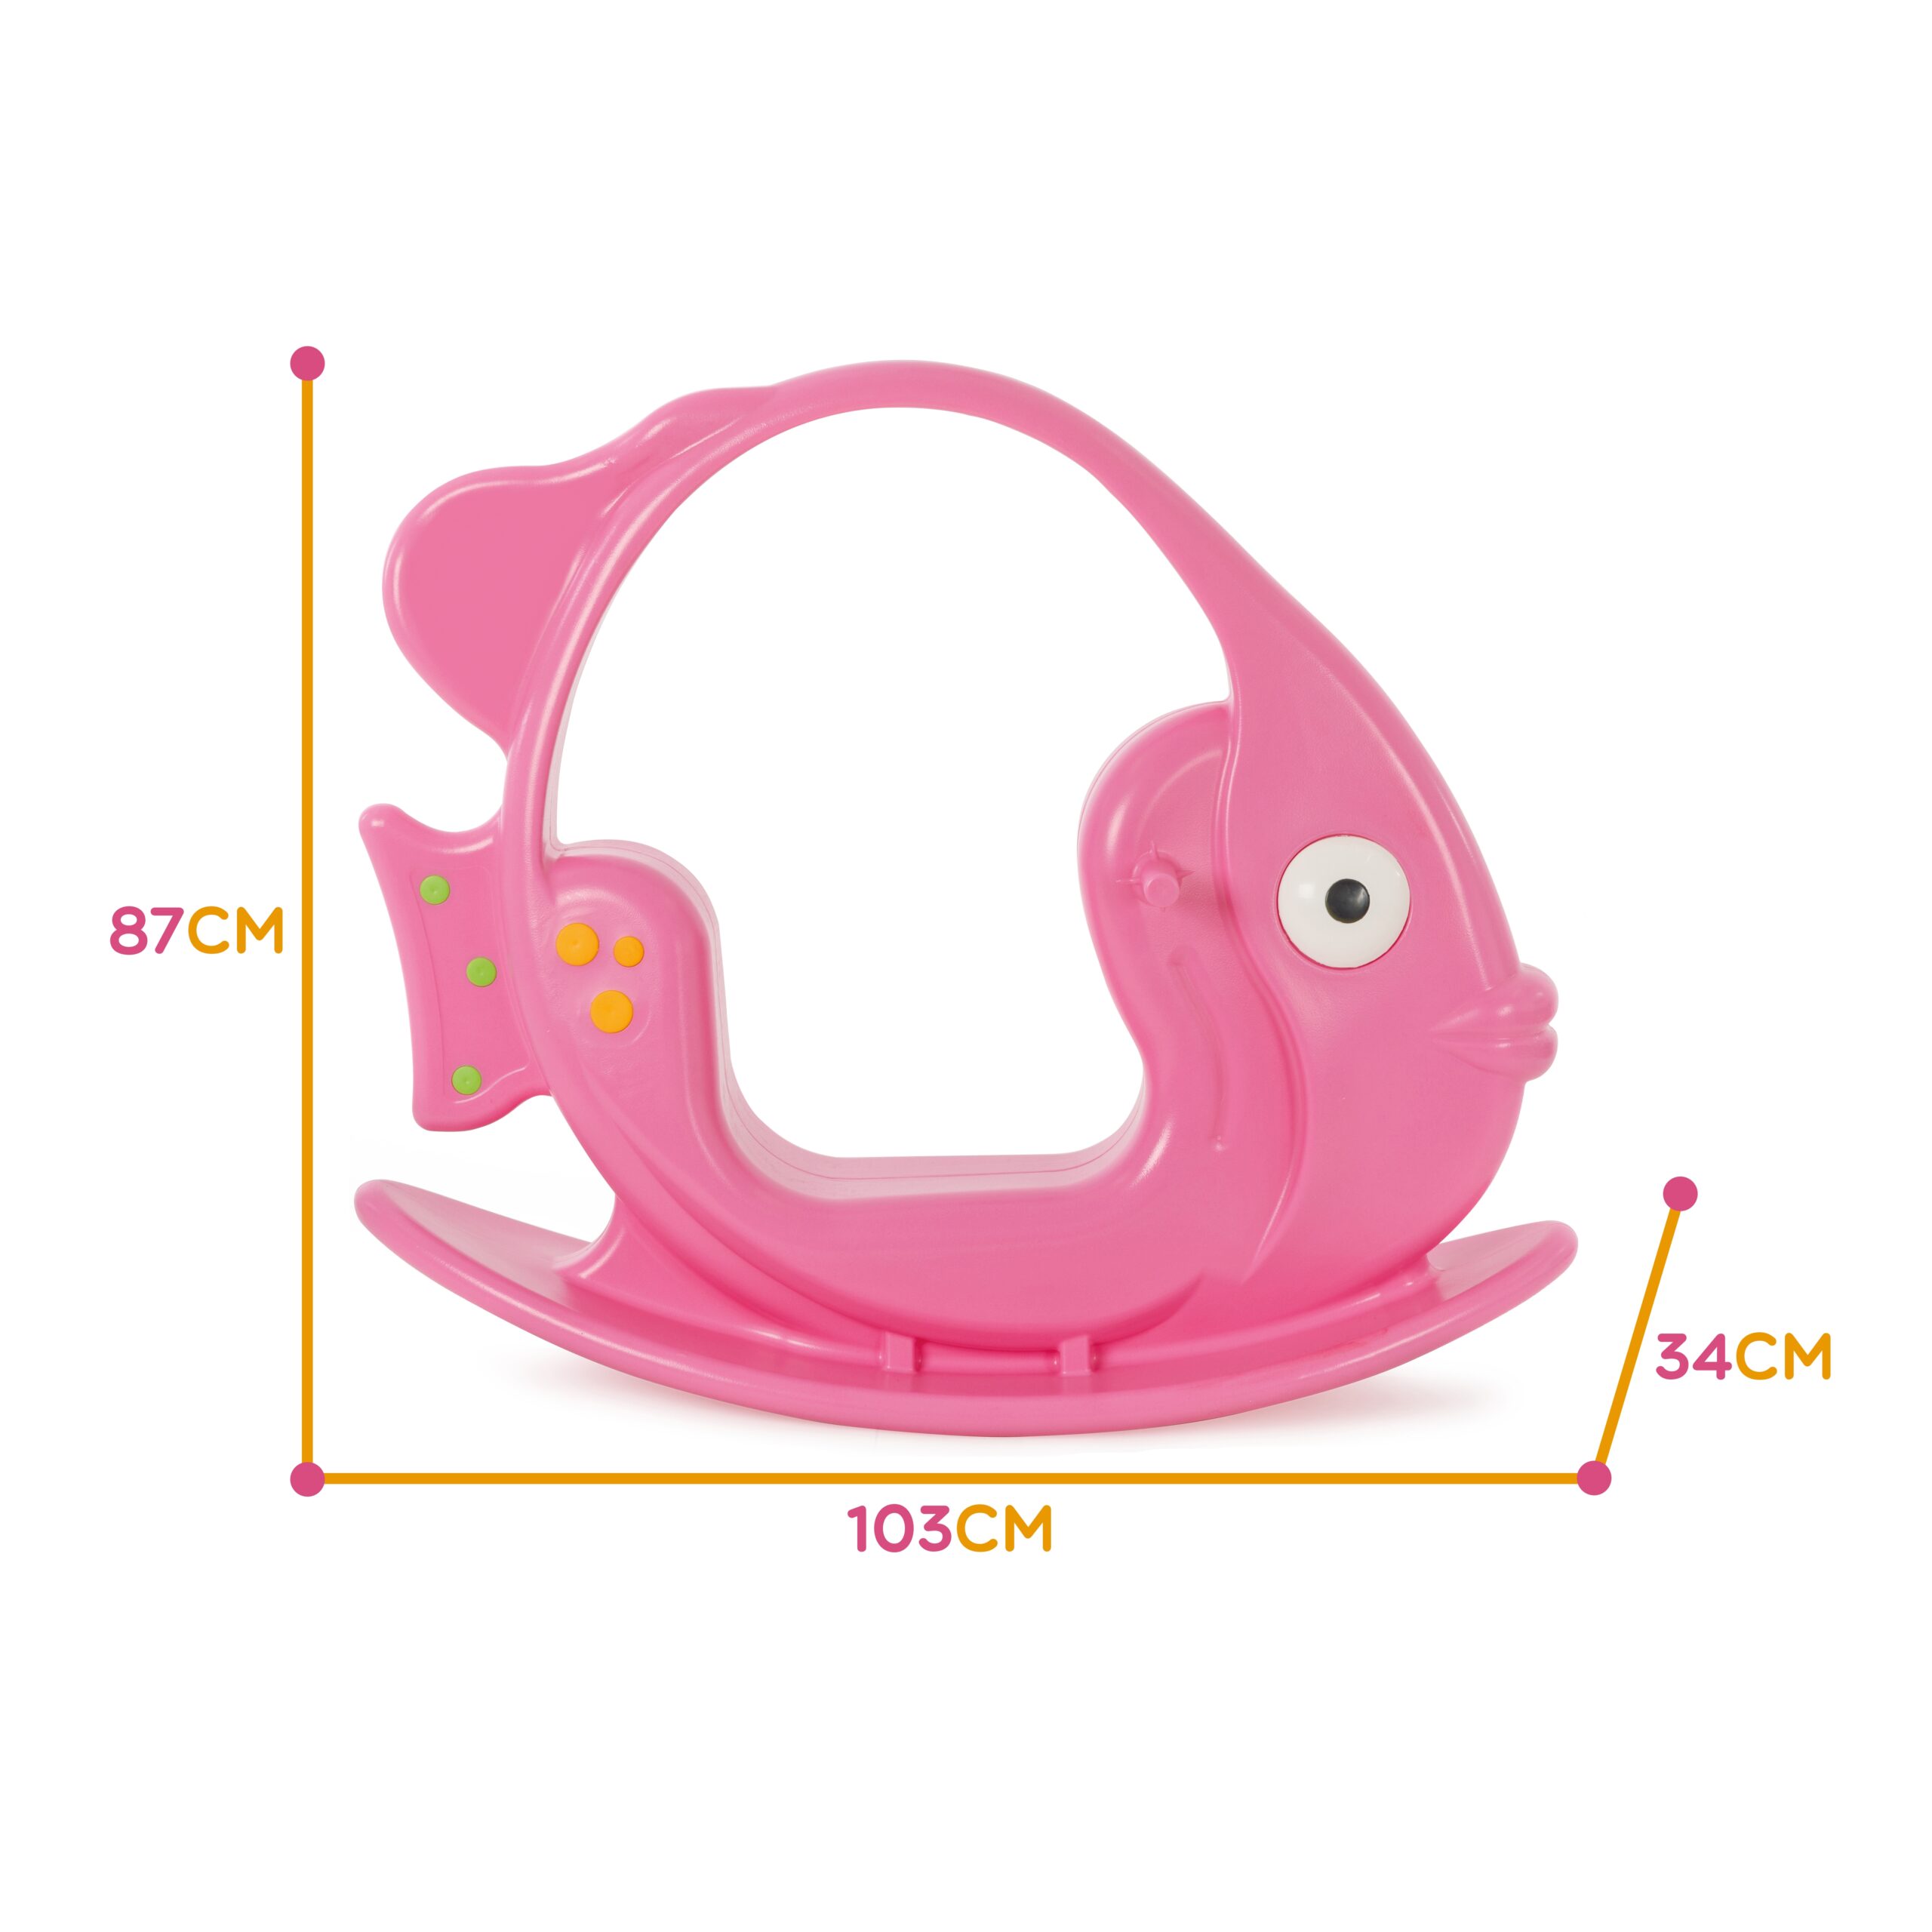 Bujak - rybka, różowa, do 35 kg, zabawka dla dzieci, Woopie